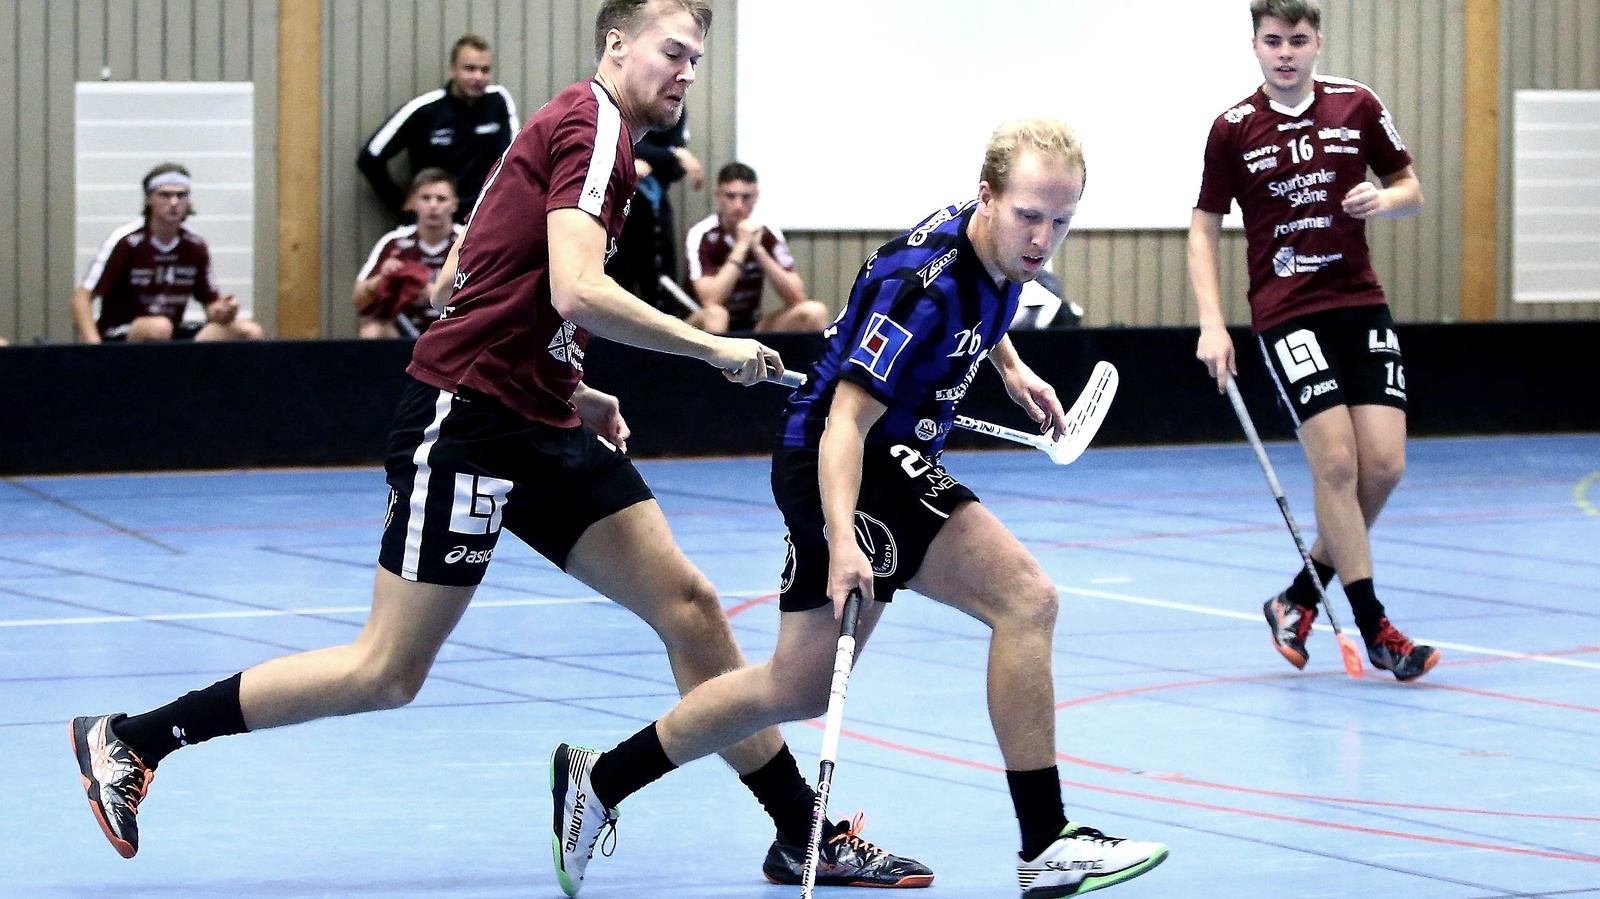 Rökes Joakim Larsson och Viktor Johansson fick slita hårt mot bra motstånd i helgen. Foto: Stefan Sandström